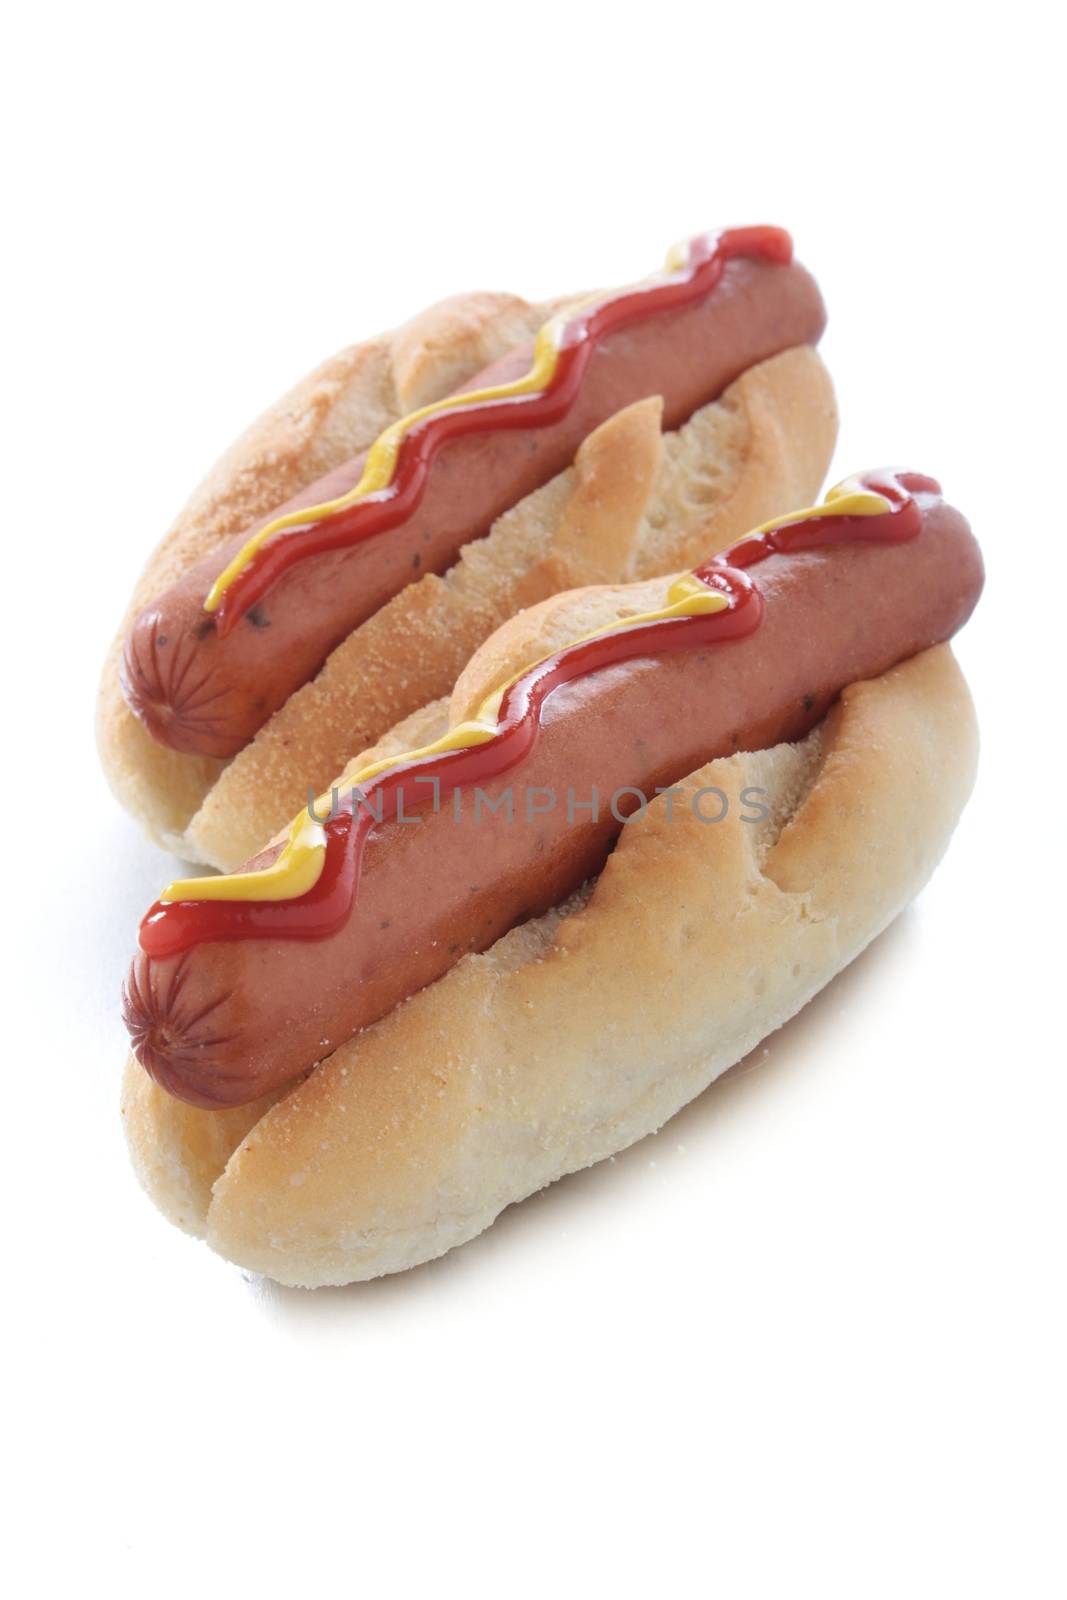 hot dog in bun